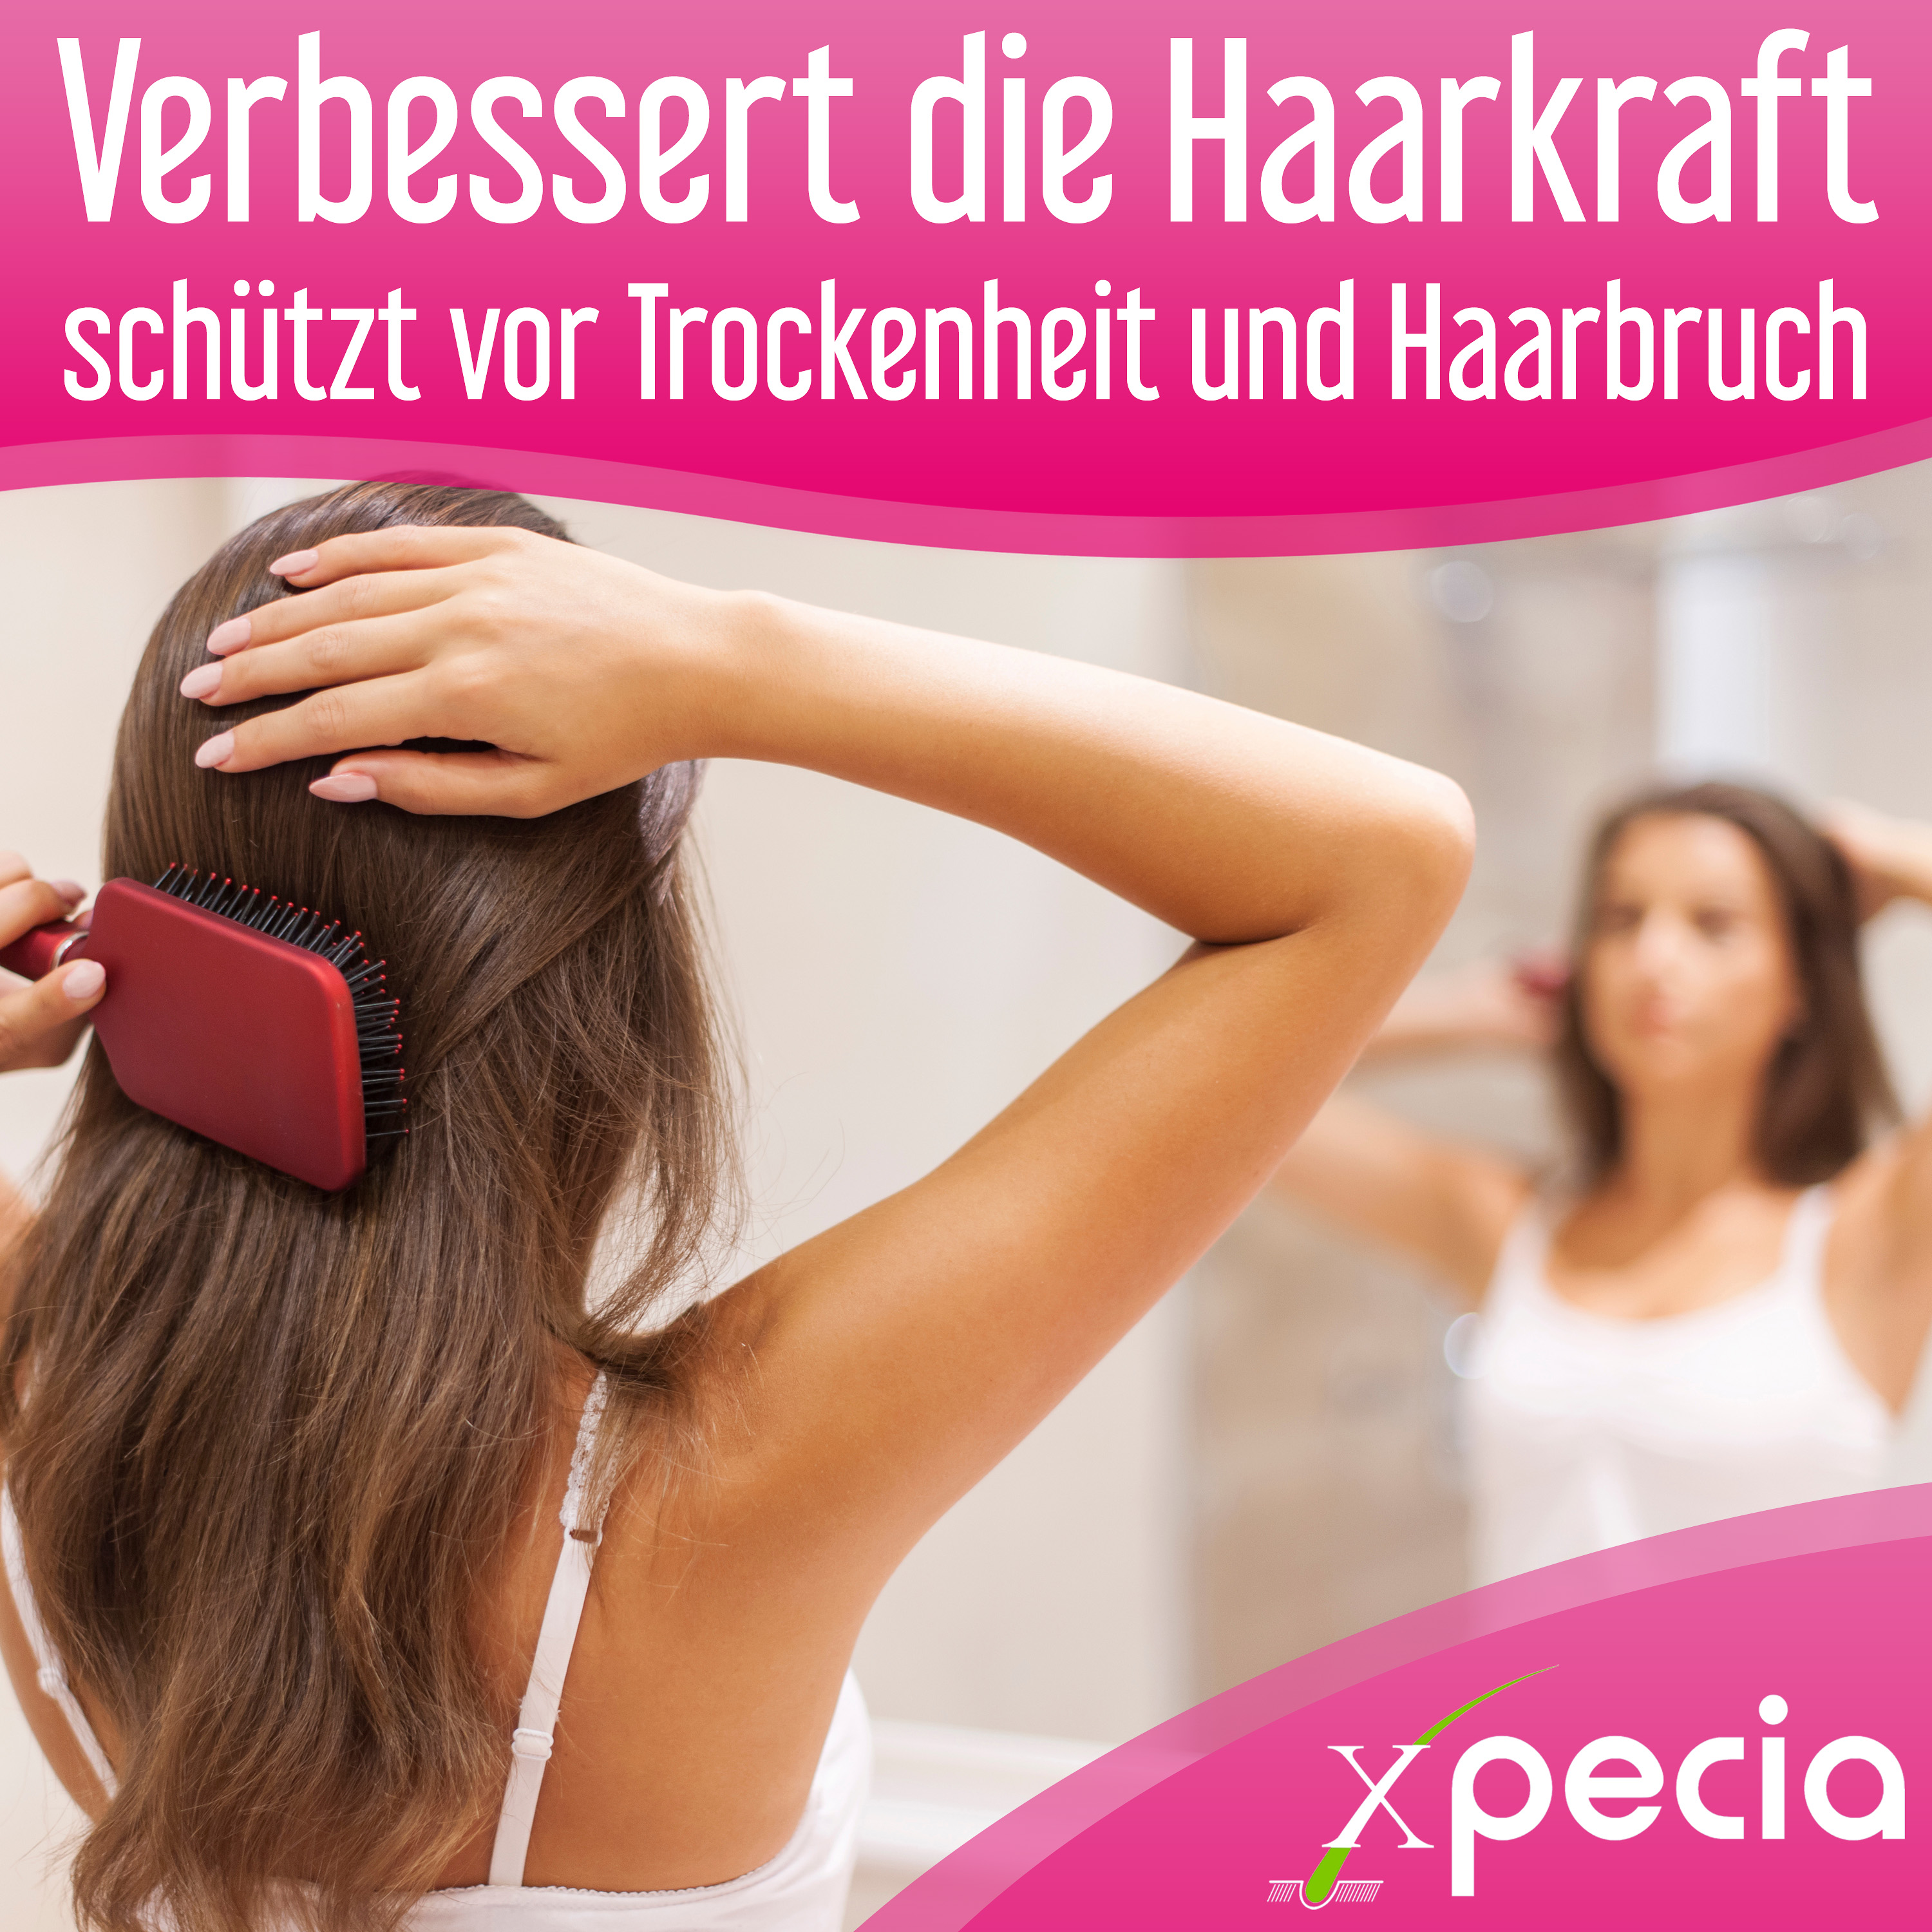 Xpecia gegen Haarausfall bei Frauen 3 Stück